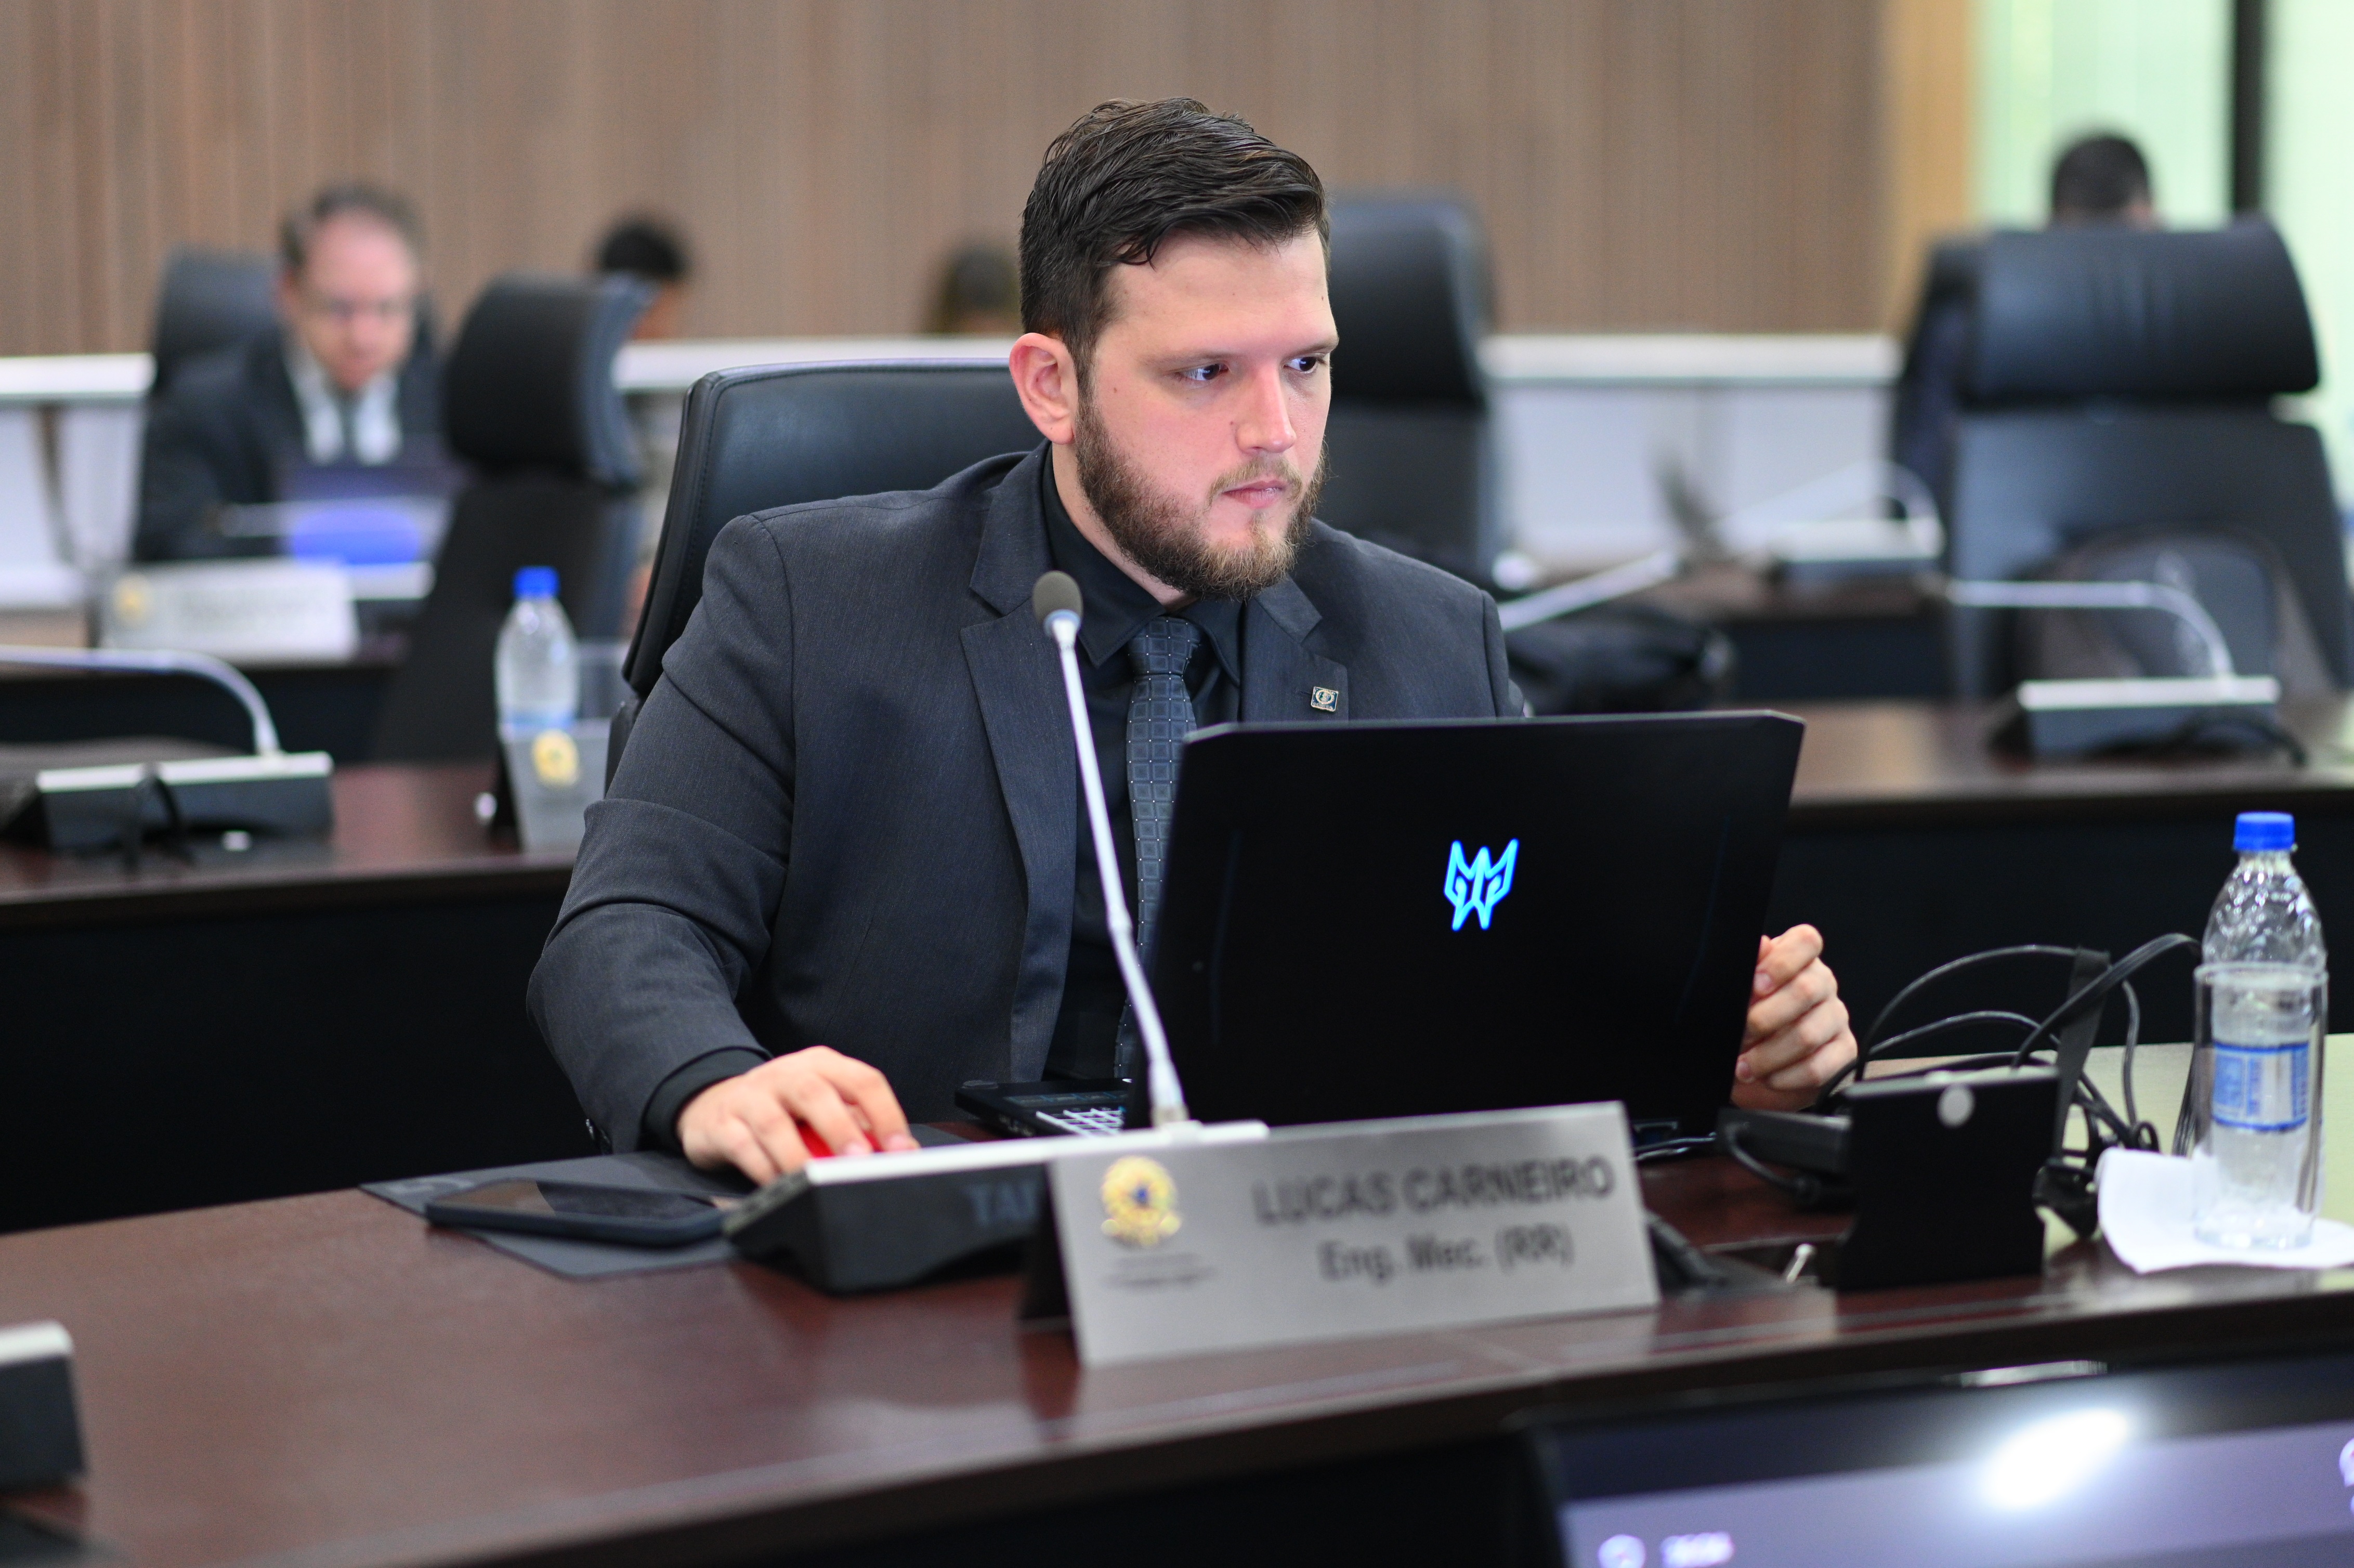 Coordenador da Conp, eng. mec. Lucas Carneiro, relatou a resolução que extingue a exigência do Livro de Ordem